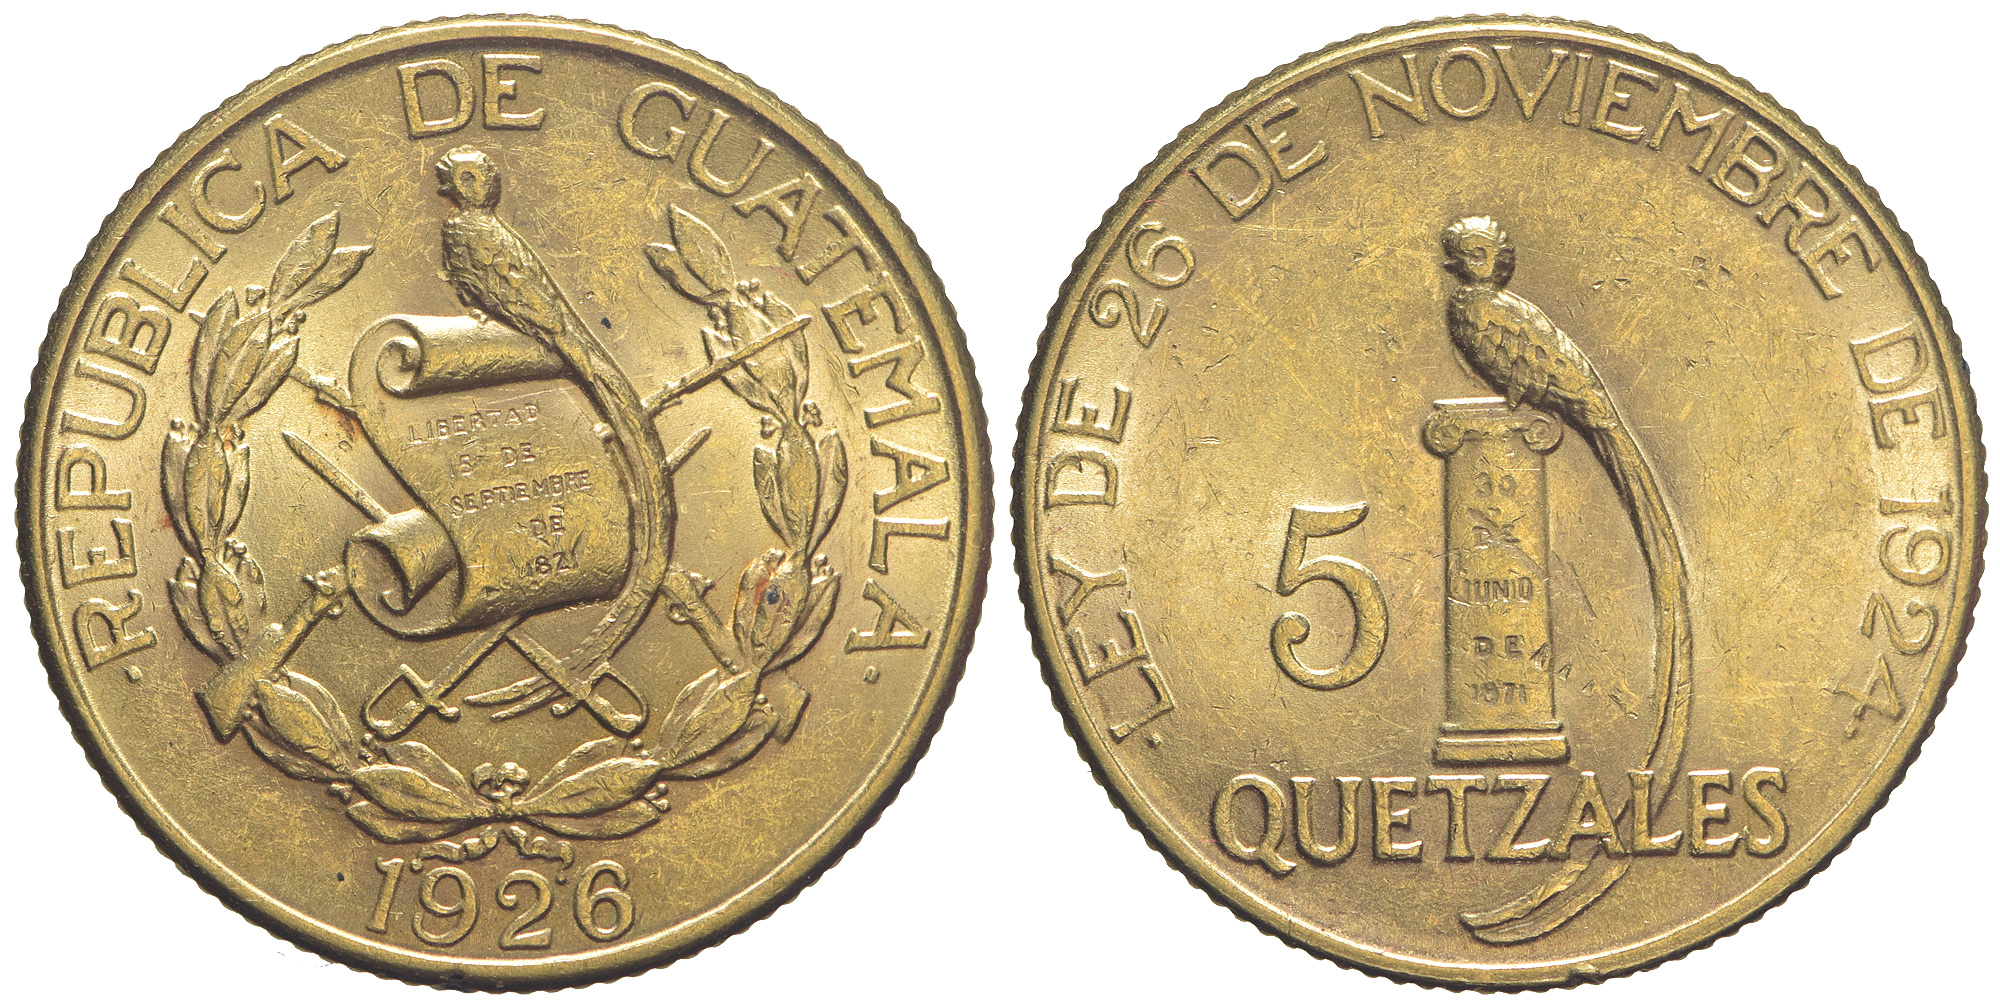 Guatemala Republic Quetzales 1926 Gold 